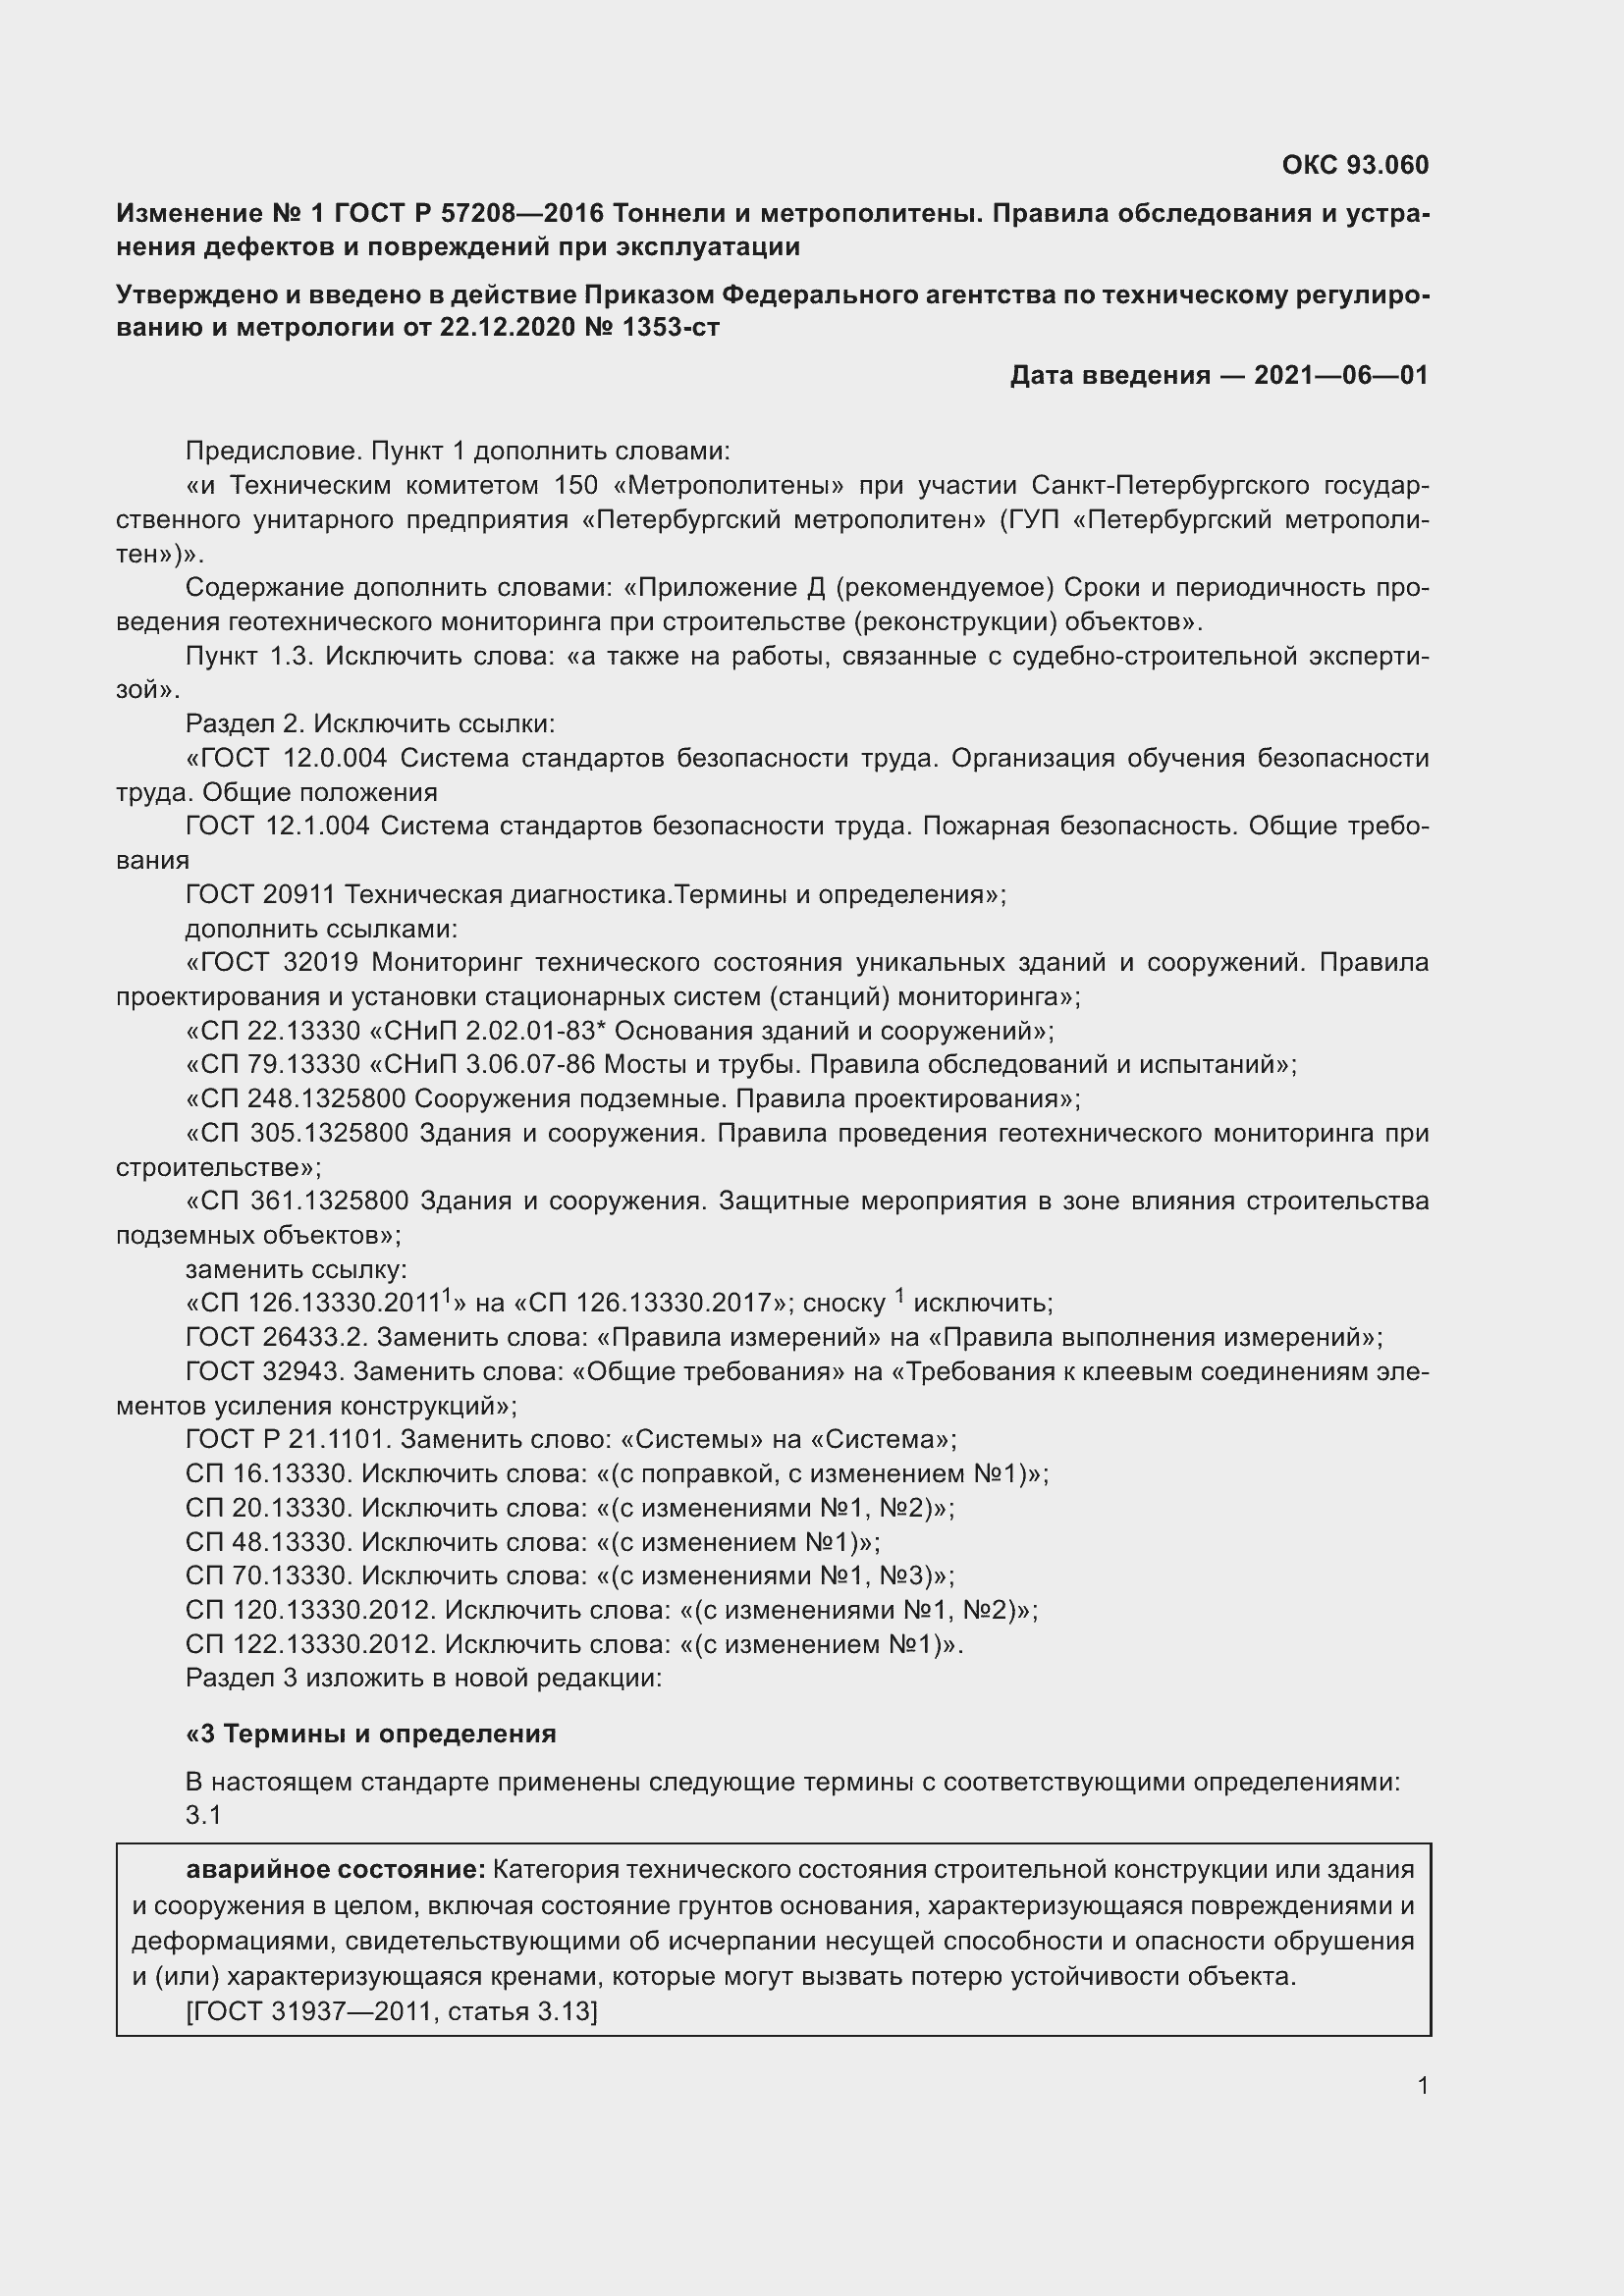 Изменение №1 к ГОСТ Р 57208-2016